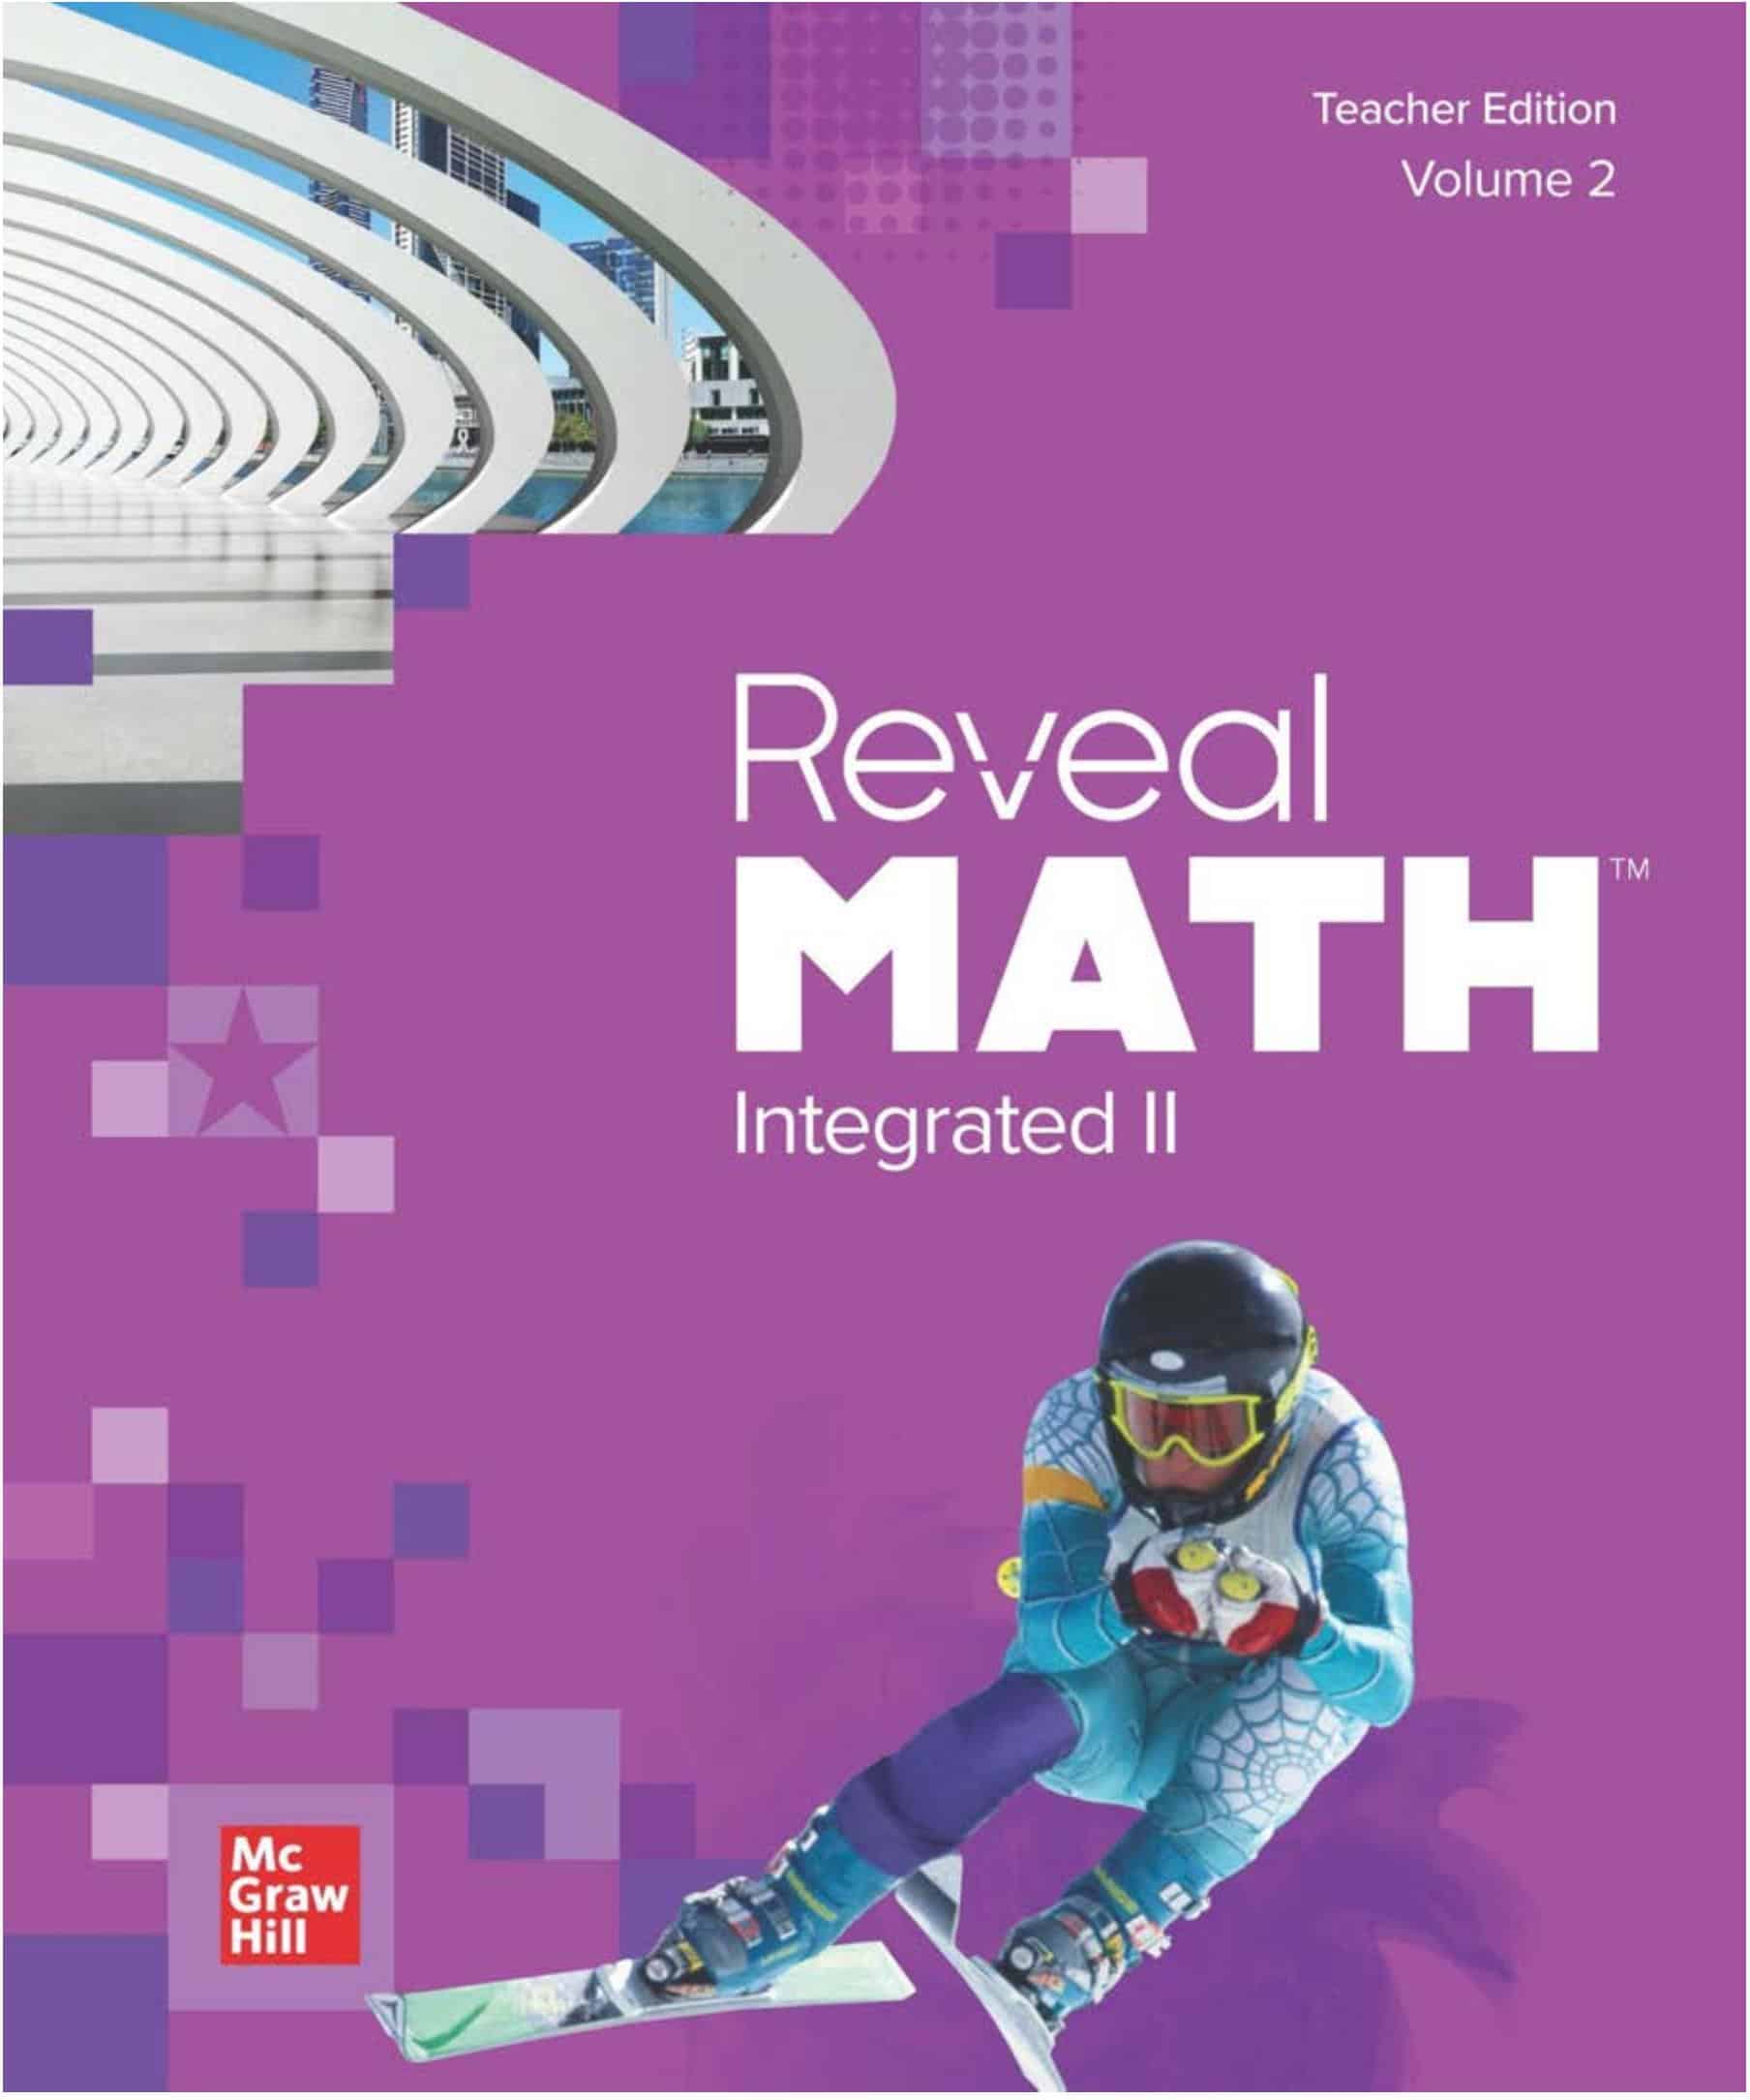 كتاب دليل المعلم Teacher Edition volume 2 الرياضيات المتكاملة Reveal الصف التاسع